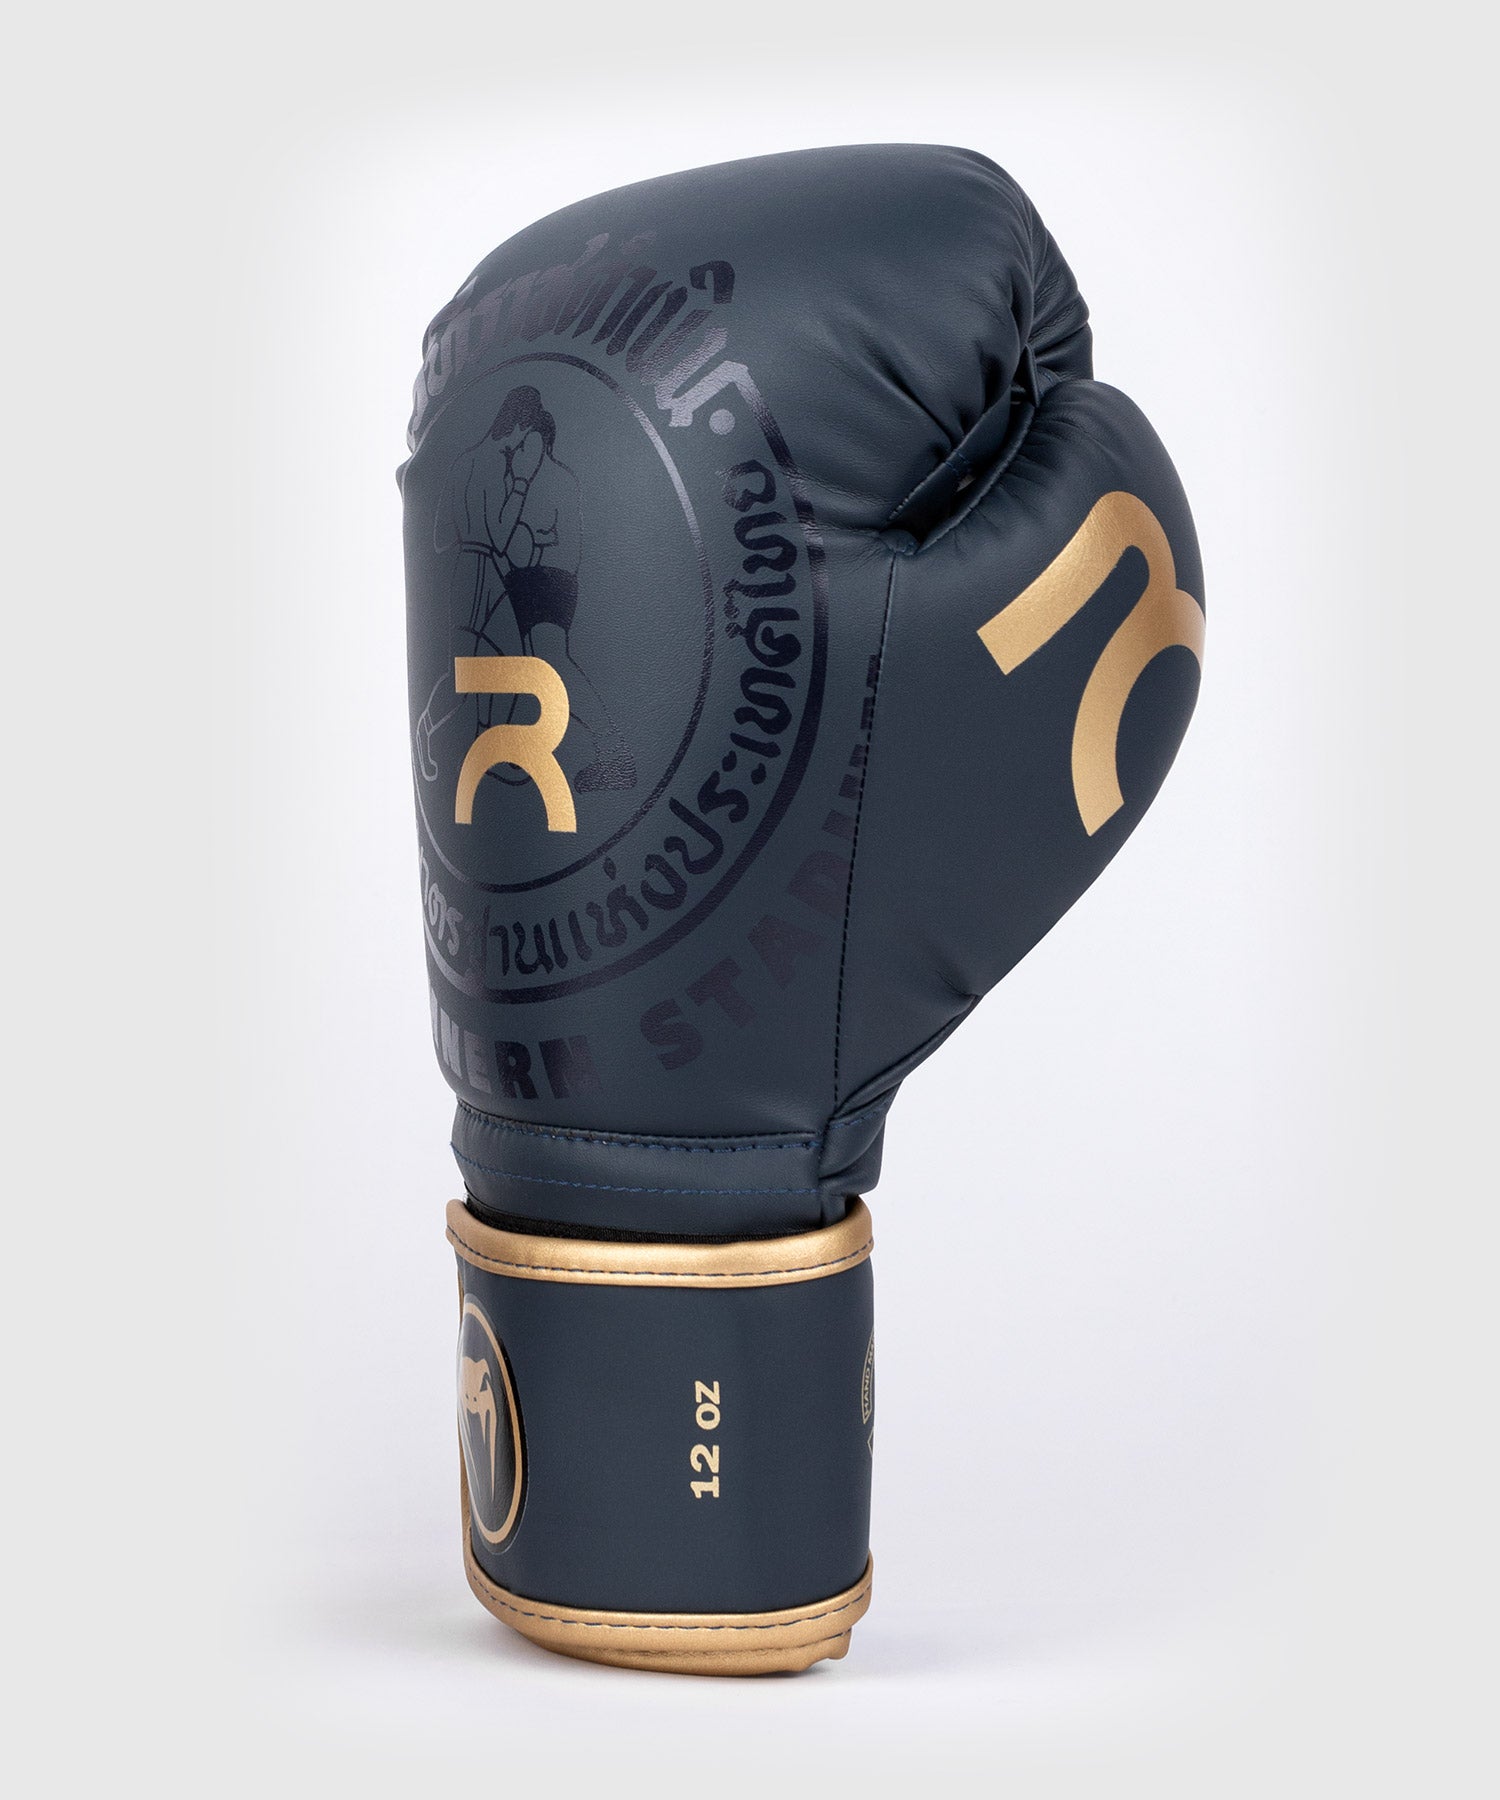 Ringside Golden Gloves - Guantes de bolsa pesada, 12 onzas, color negro